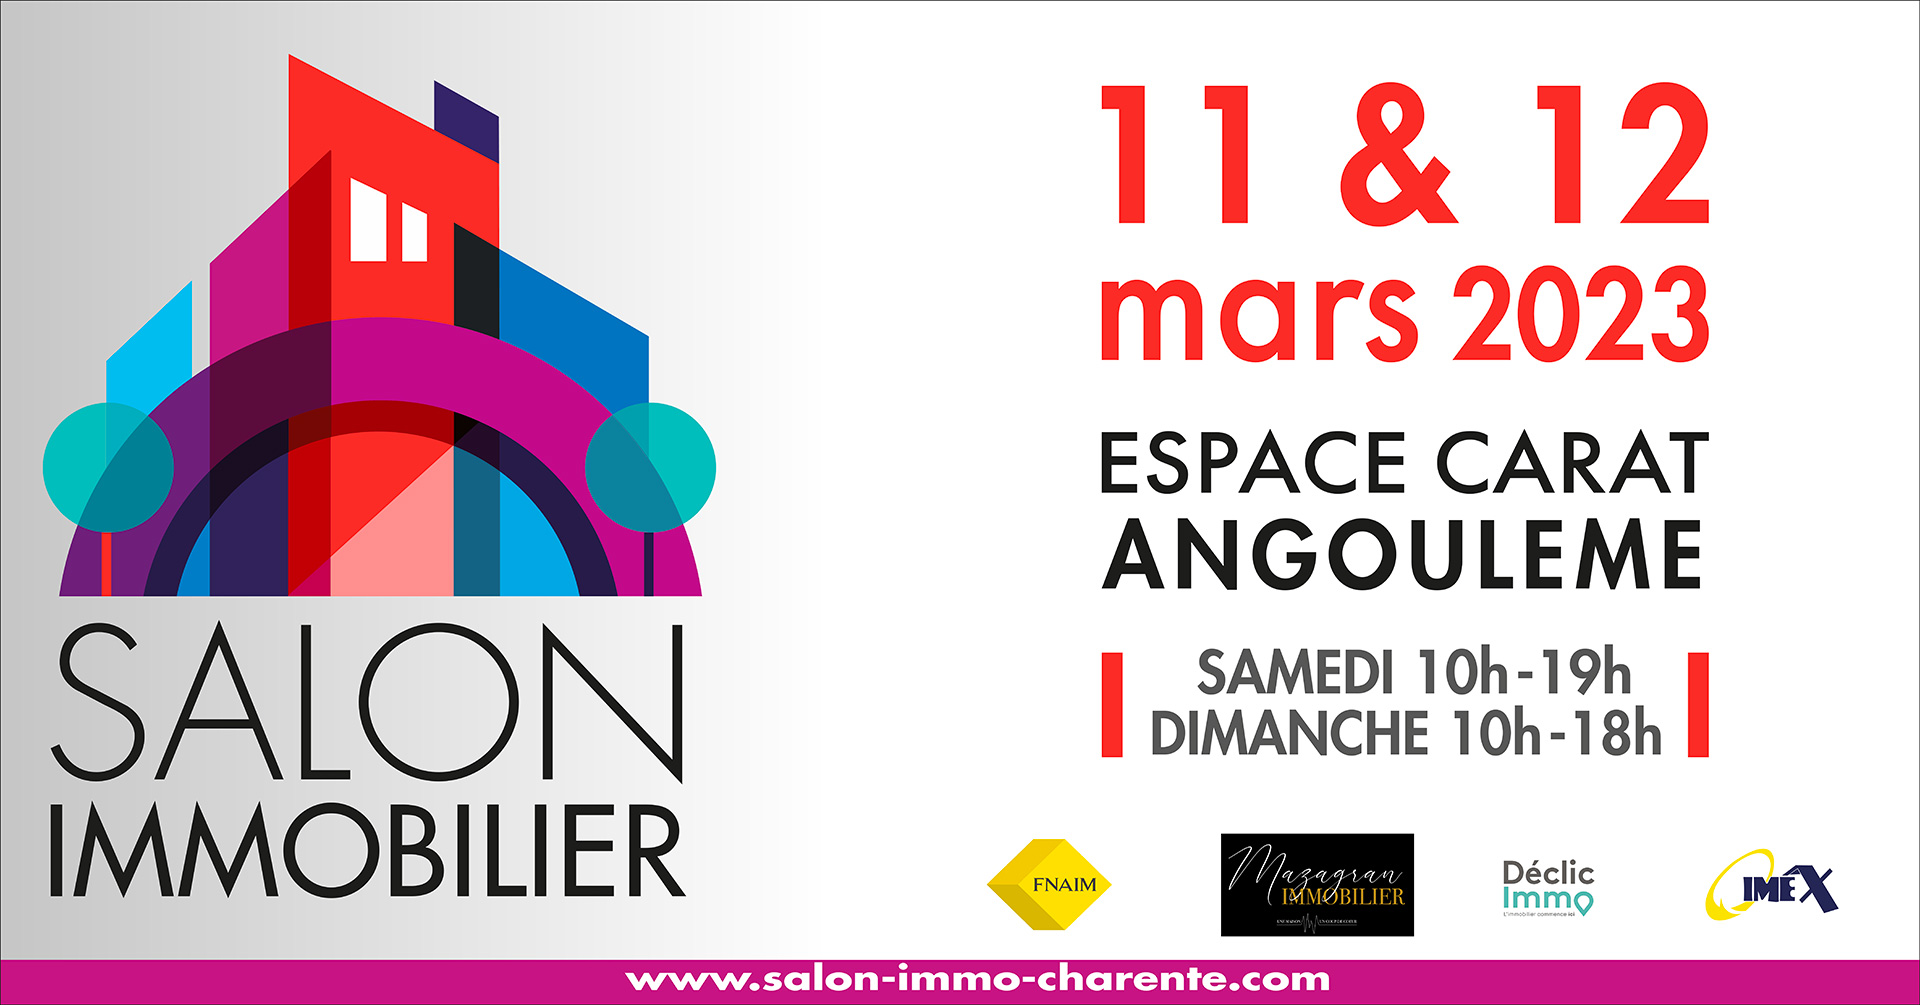 Salon de l’immobilier à l’Espace Carat Angoulême les 11 et 12 mars 2023